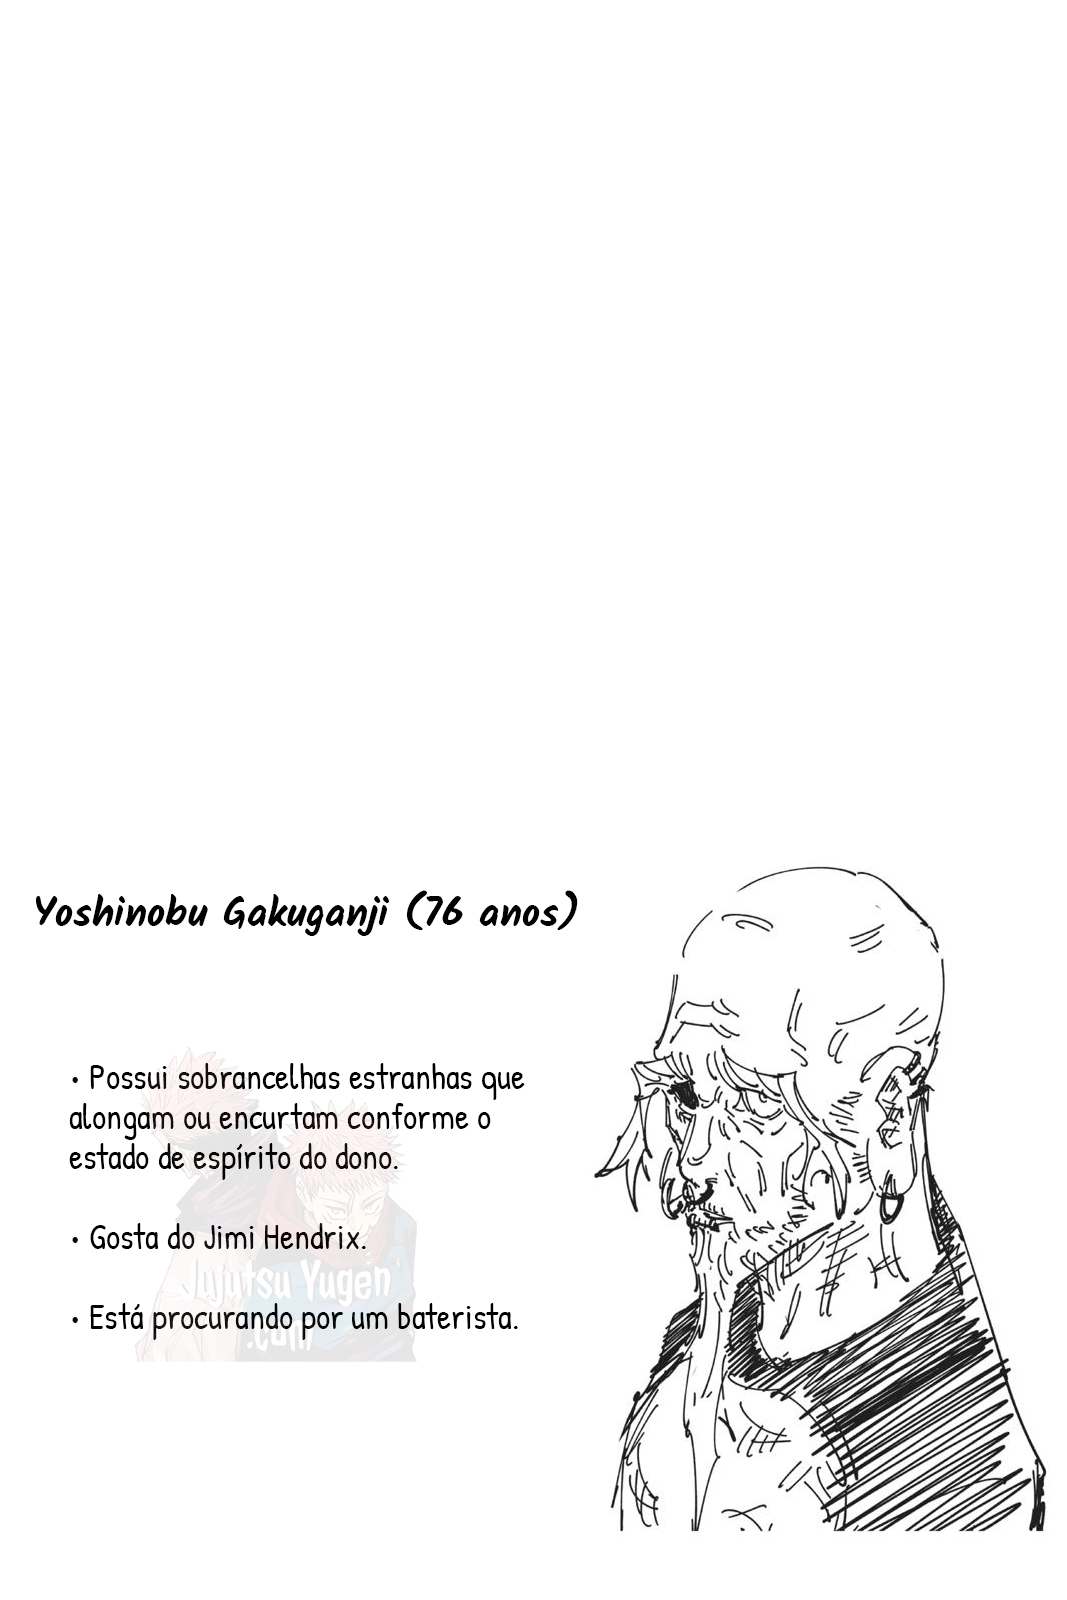 vol7-ficha-gakuganji-yoshinobu